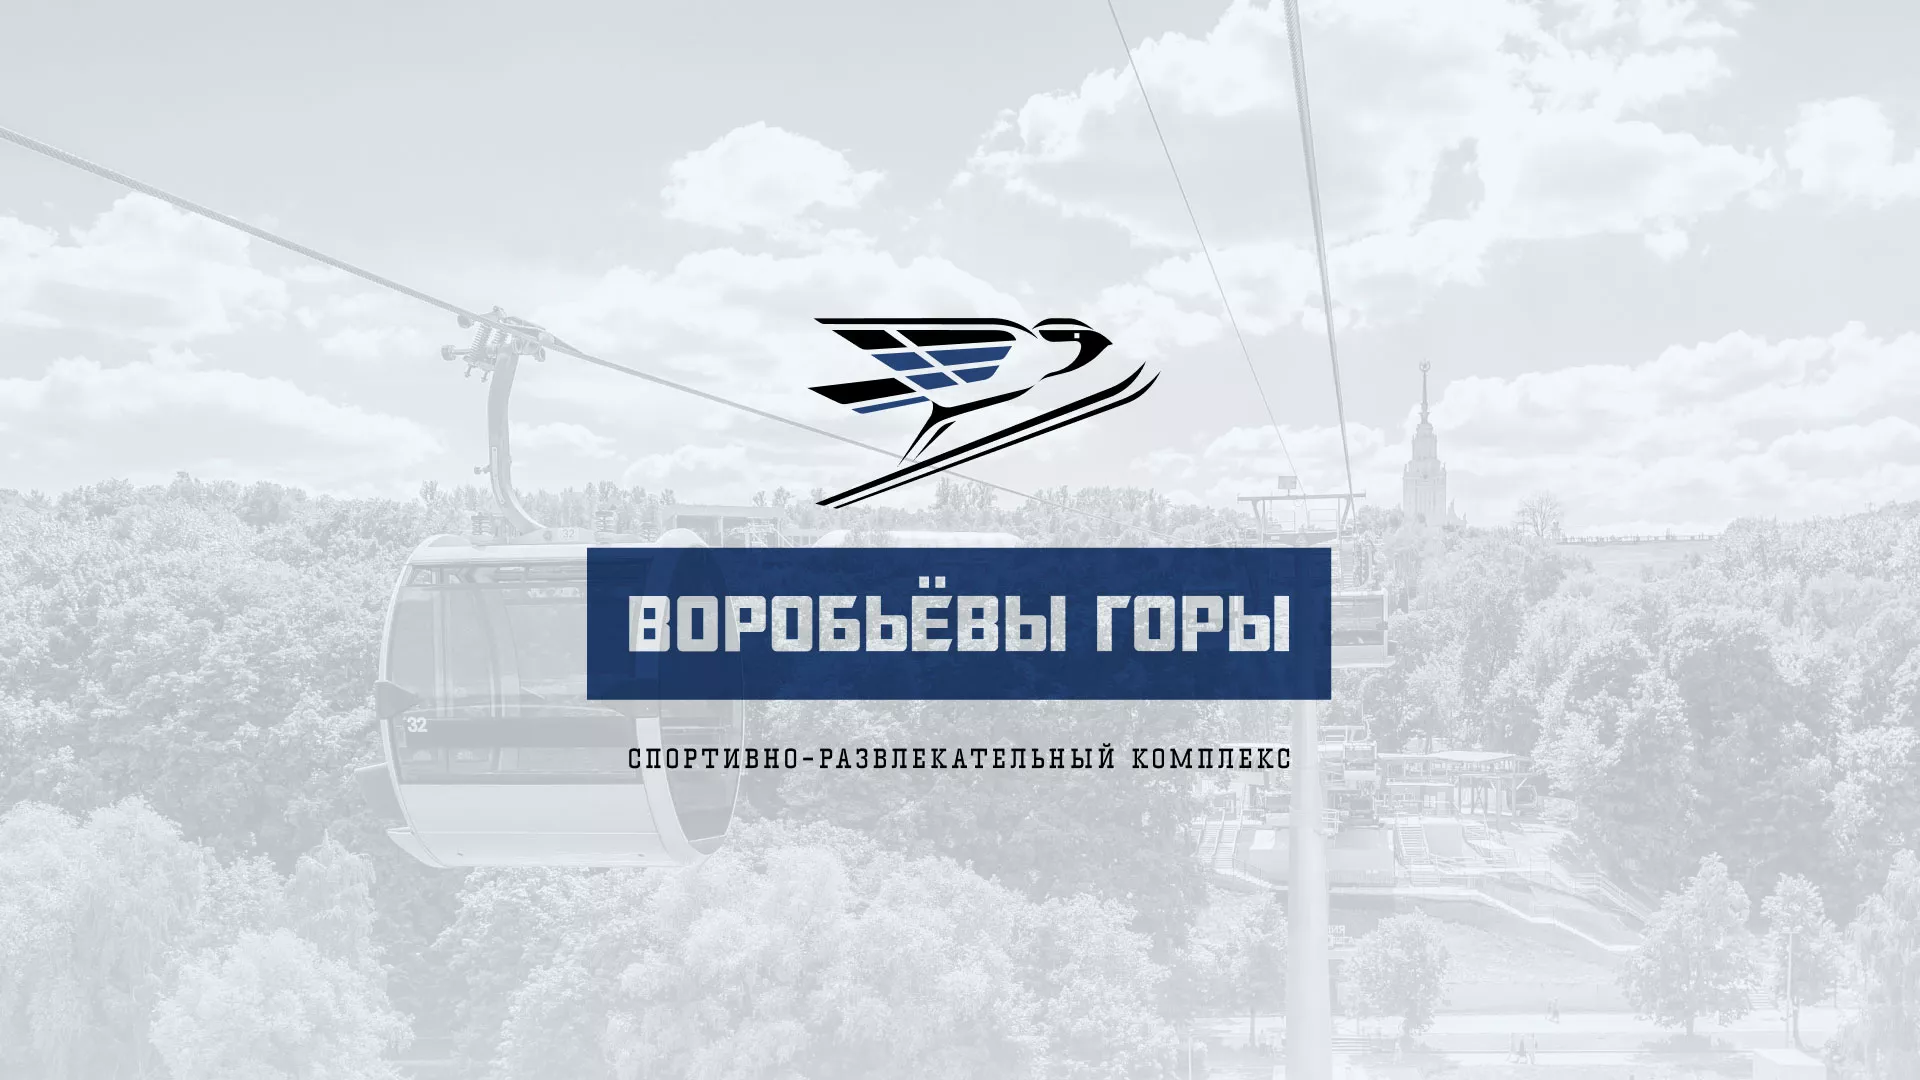 Разработка сайта в Богучаре для спортивно-развлекательного комплекса «Воробьёвы горы»